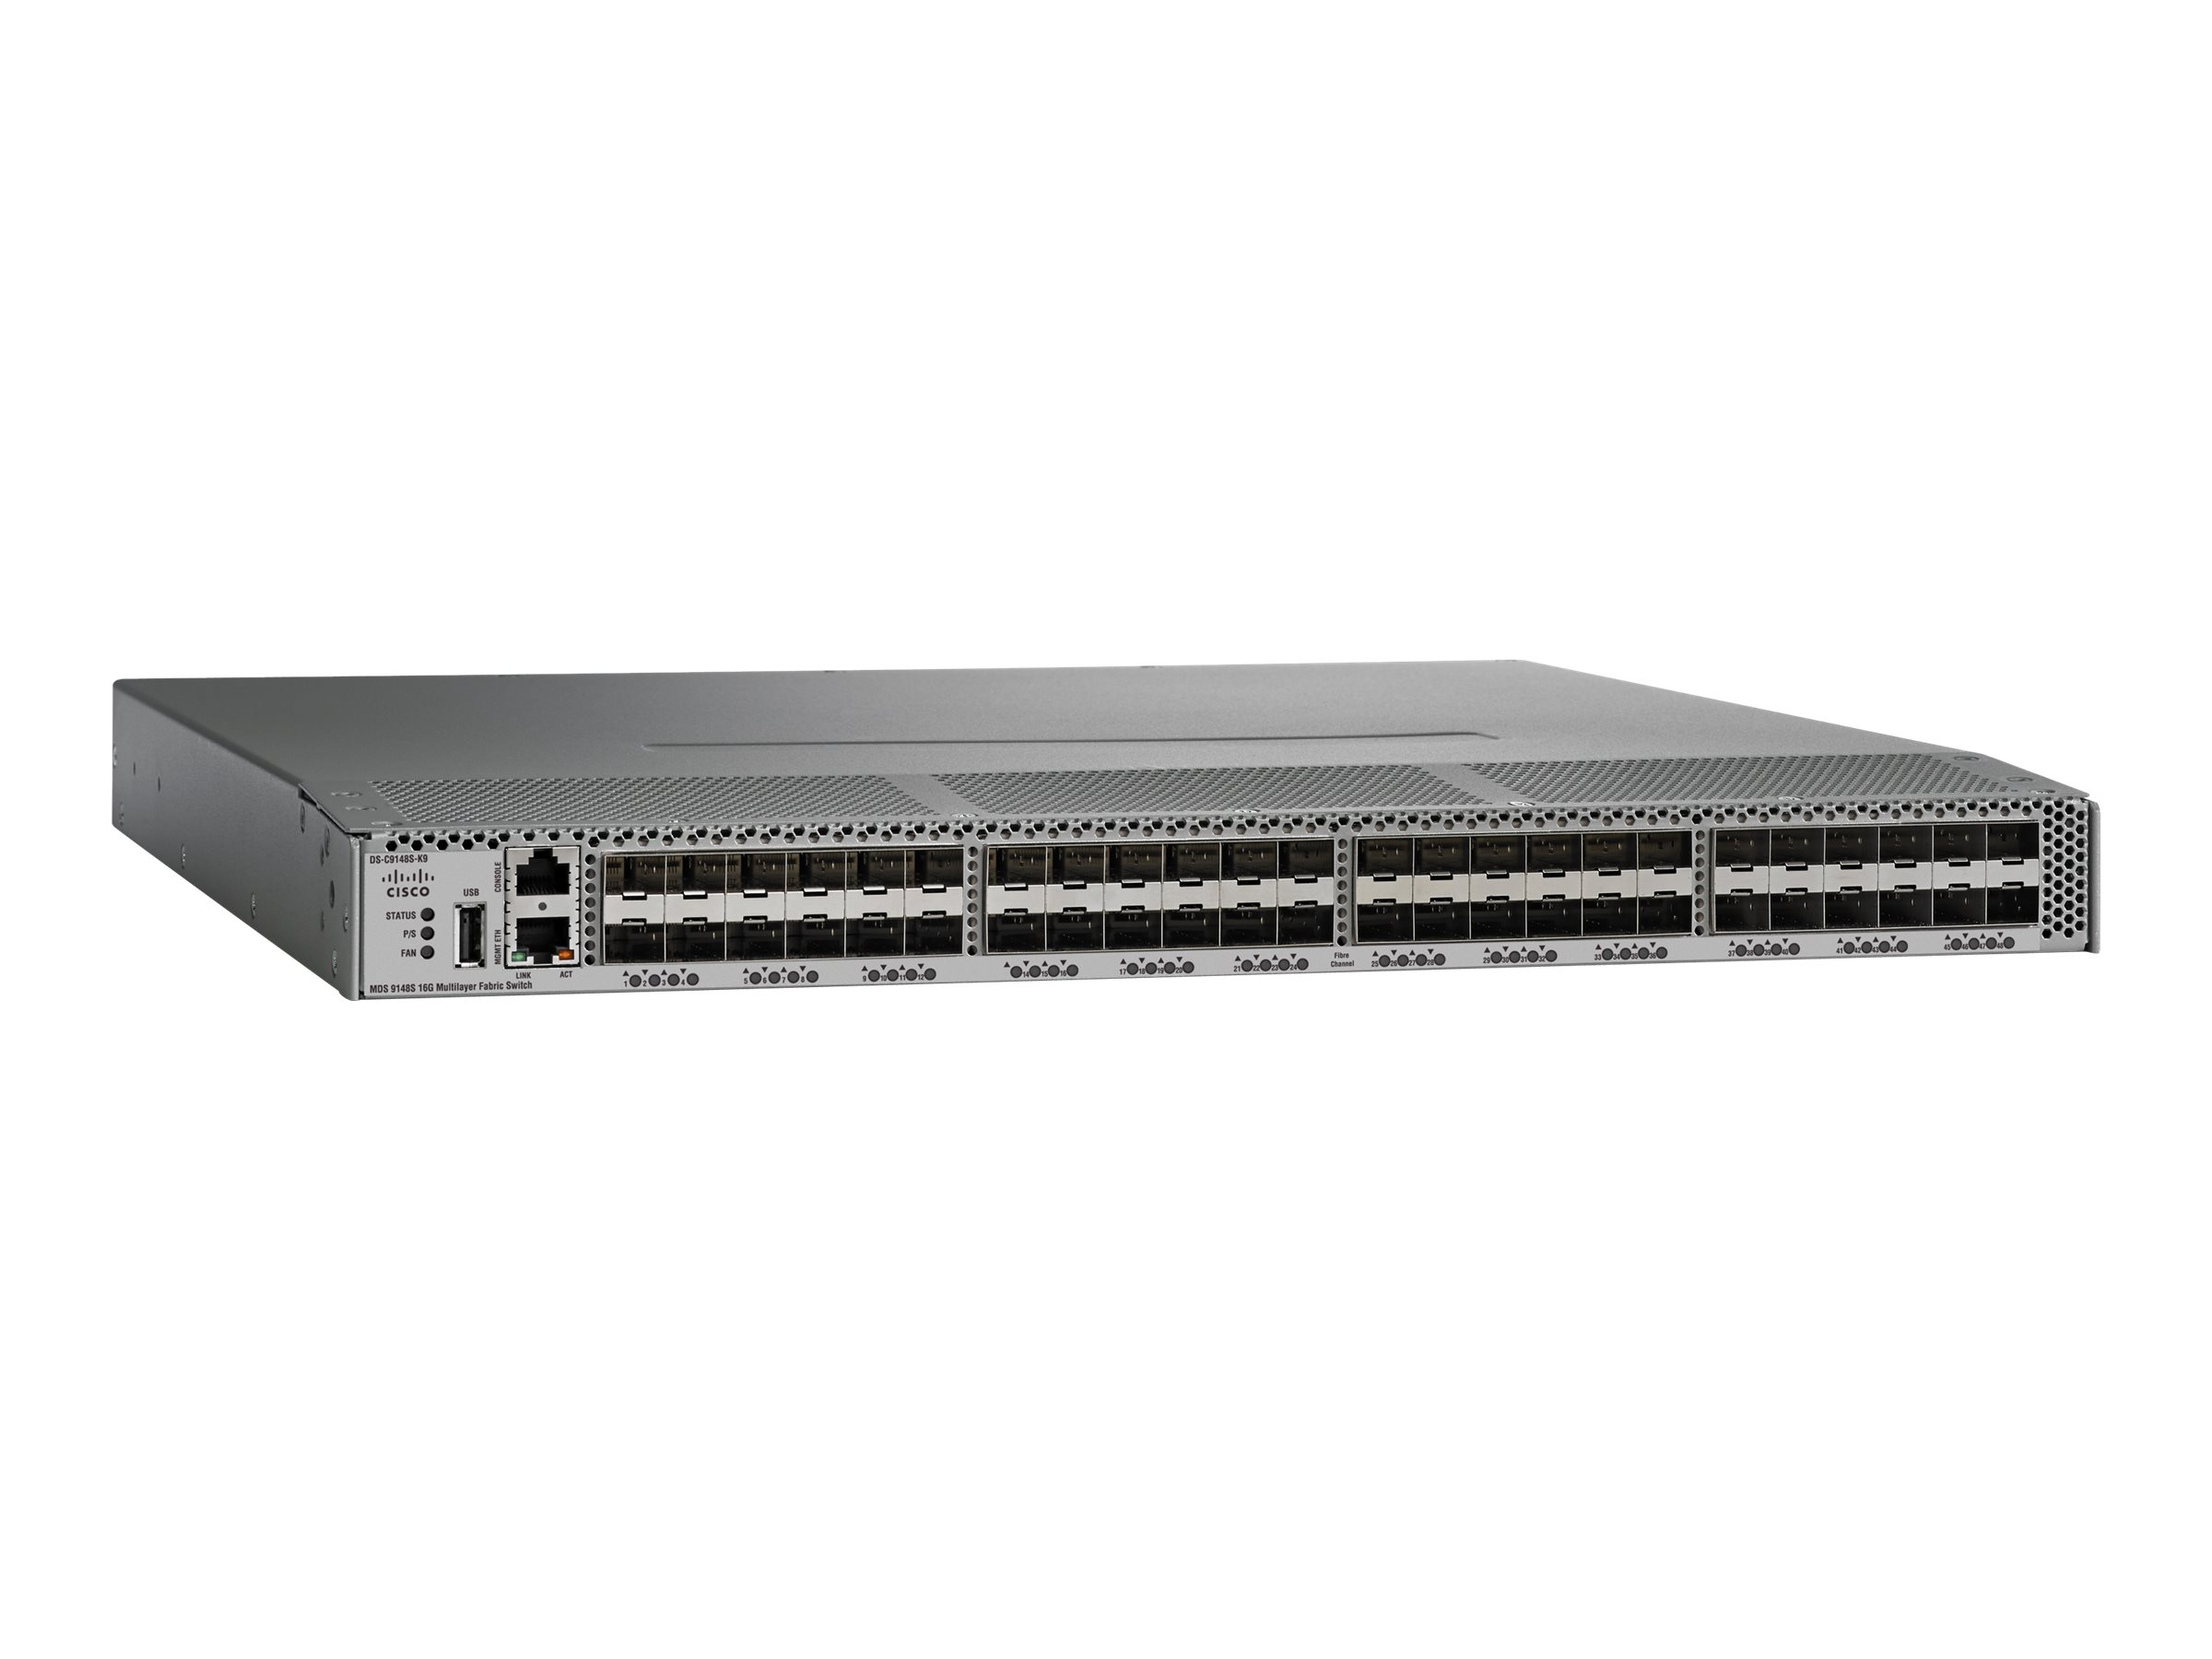 Cisco MDS 9148S - Switch - managed - 12 x 16Gb Fibre Channel SFP+ - Luftstrom von hinten nach vorne - an Rack montierbar